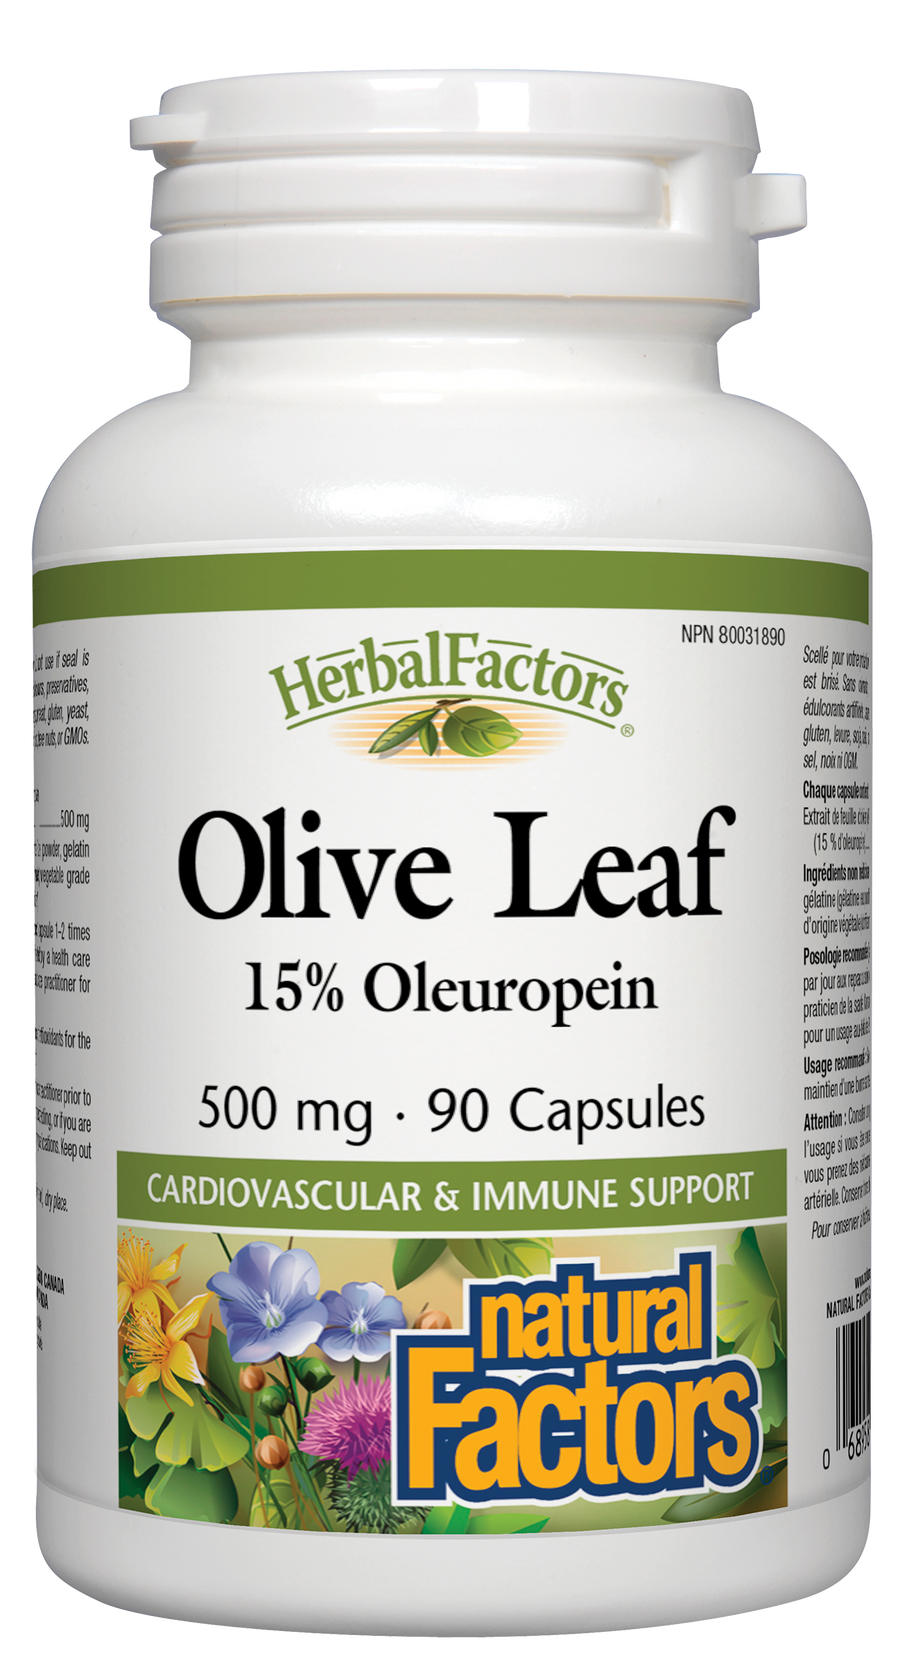 Natural Factors Olive Leaf, HerbalFactors 500 mg 90 Capsules